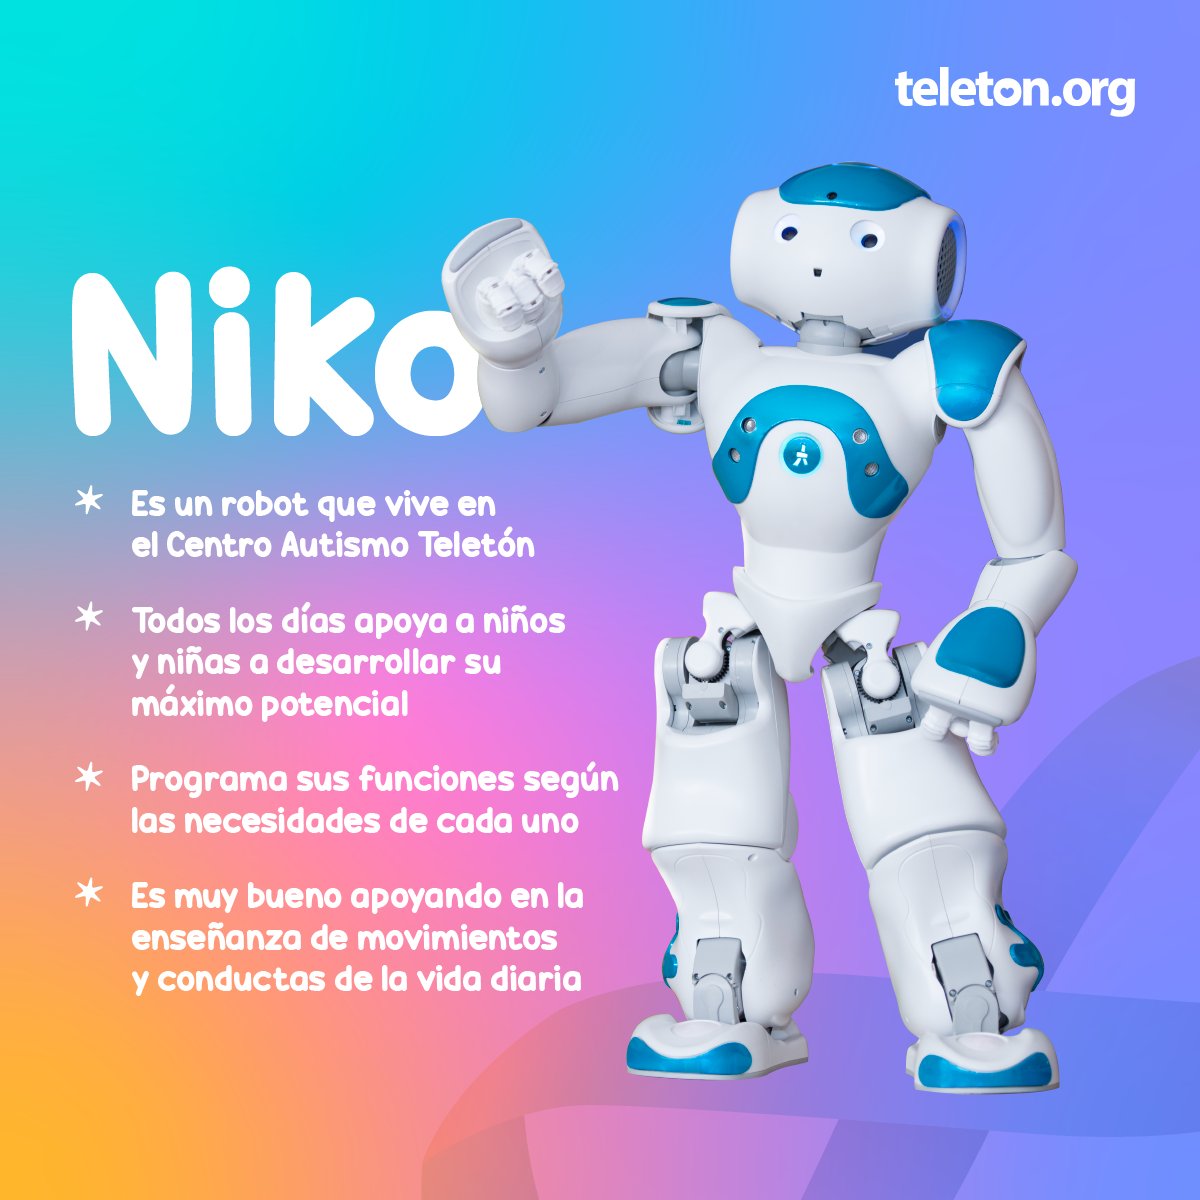 Conoce a Niko, el robot NAO humanoide que vive en el Centro @AutismoTeleton y apoya a niños y niñas a mejorar conductas respecto al seguimiento de instrucciones, socialización, imitación o juego. #AutismoTeletón 🤖